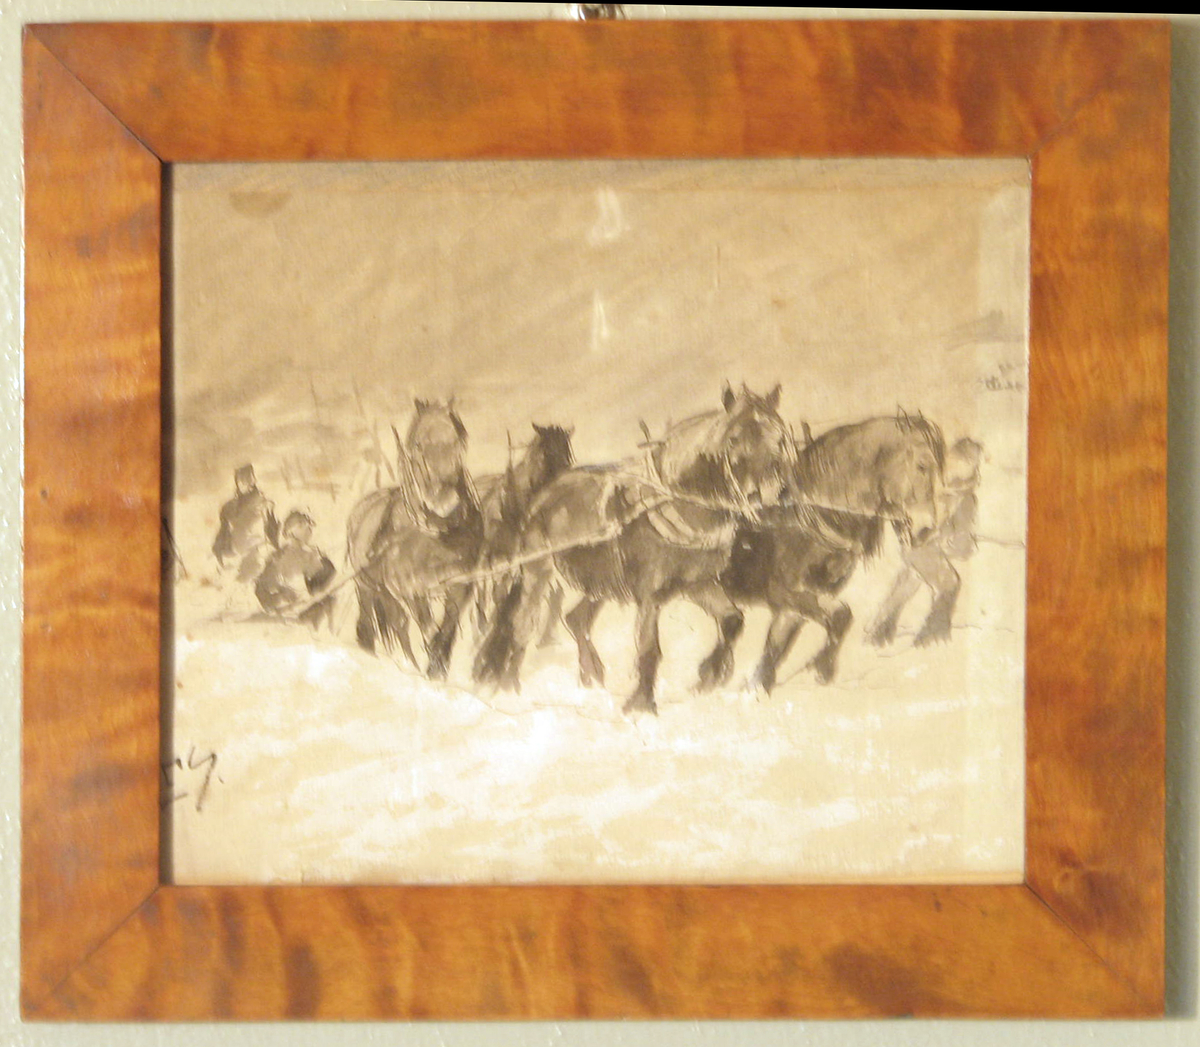 Rektangulær. 4 hester i spann mot h., 3 menn, sne, mørk himm.
